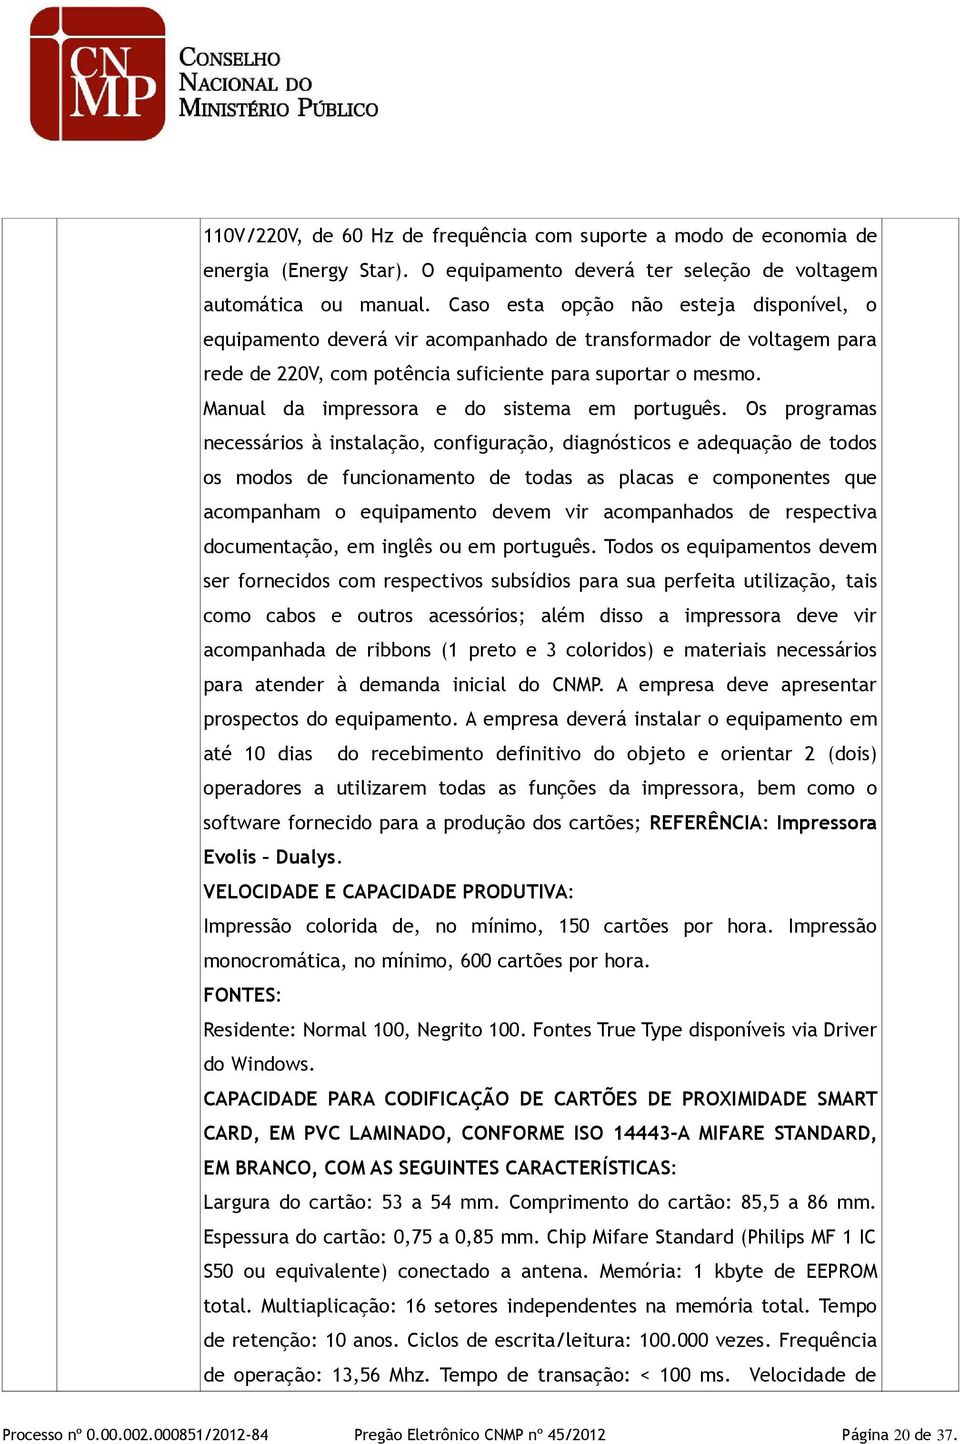 Manual da impressora e do sistema em português.